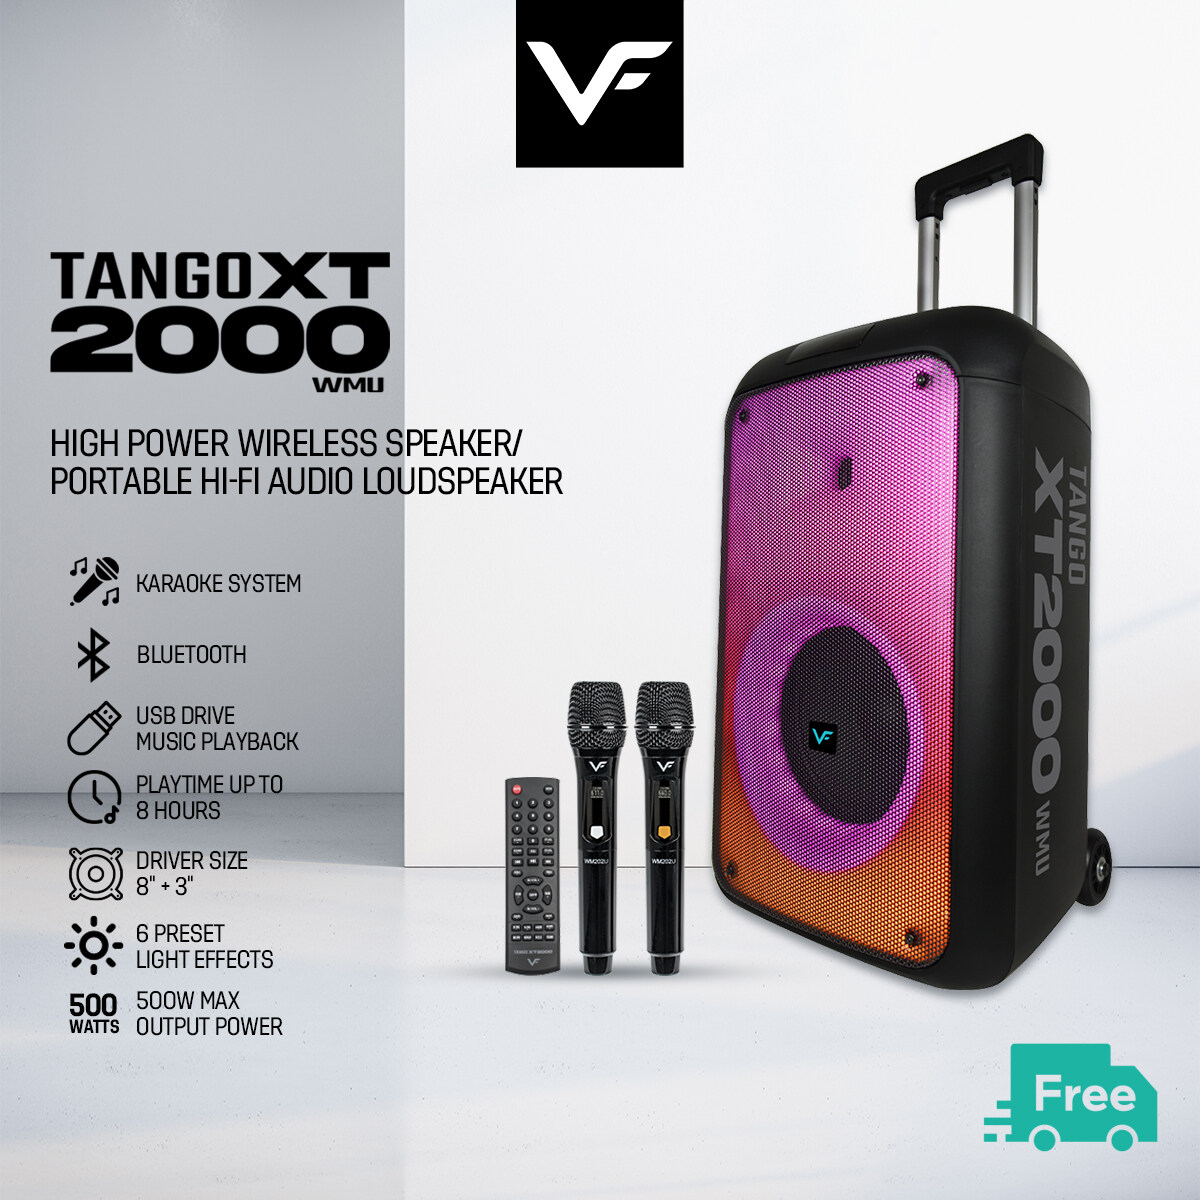 Vinnfier VF Tango XT2000 WMU Bluetooth Portable HI-FI Audio Loud Speaker Karaoke PartyBox Speaker with 2 Wireless Mic